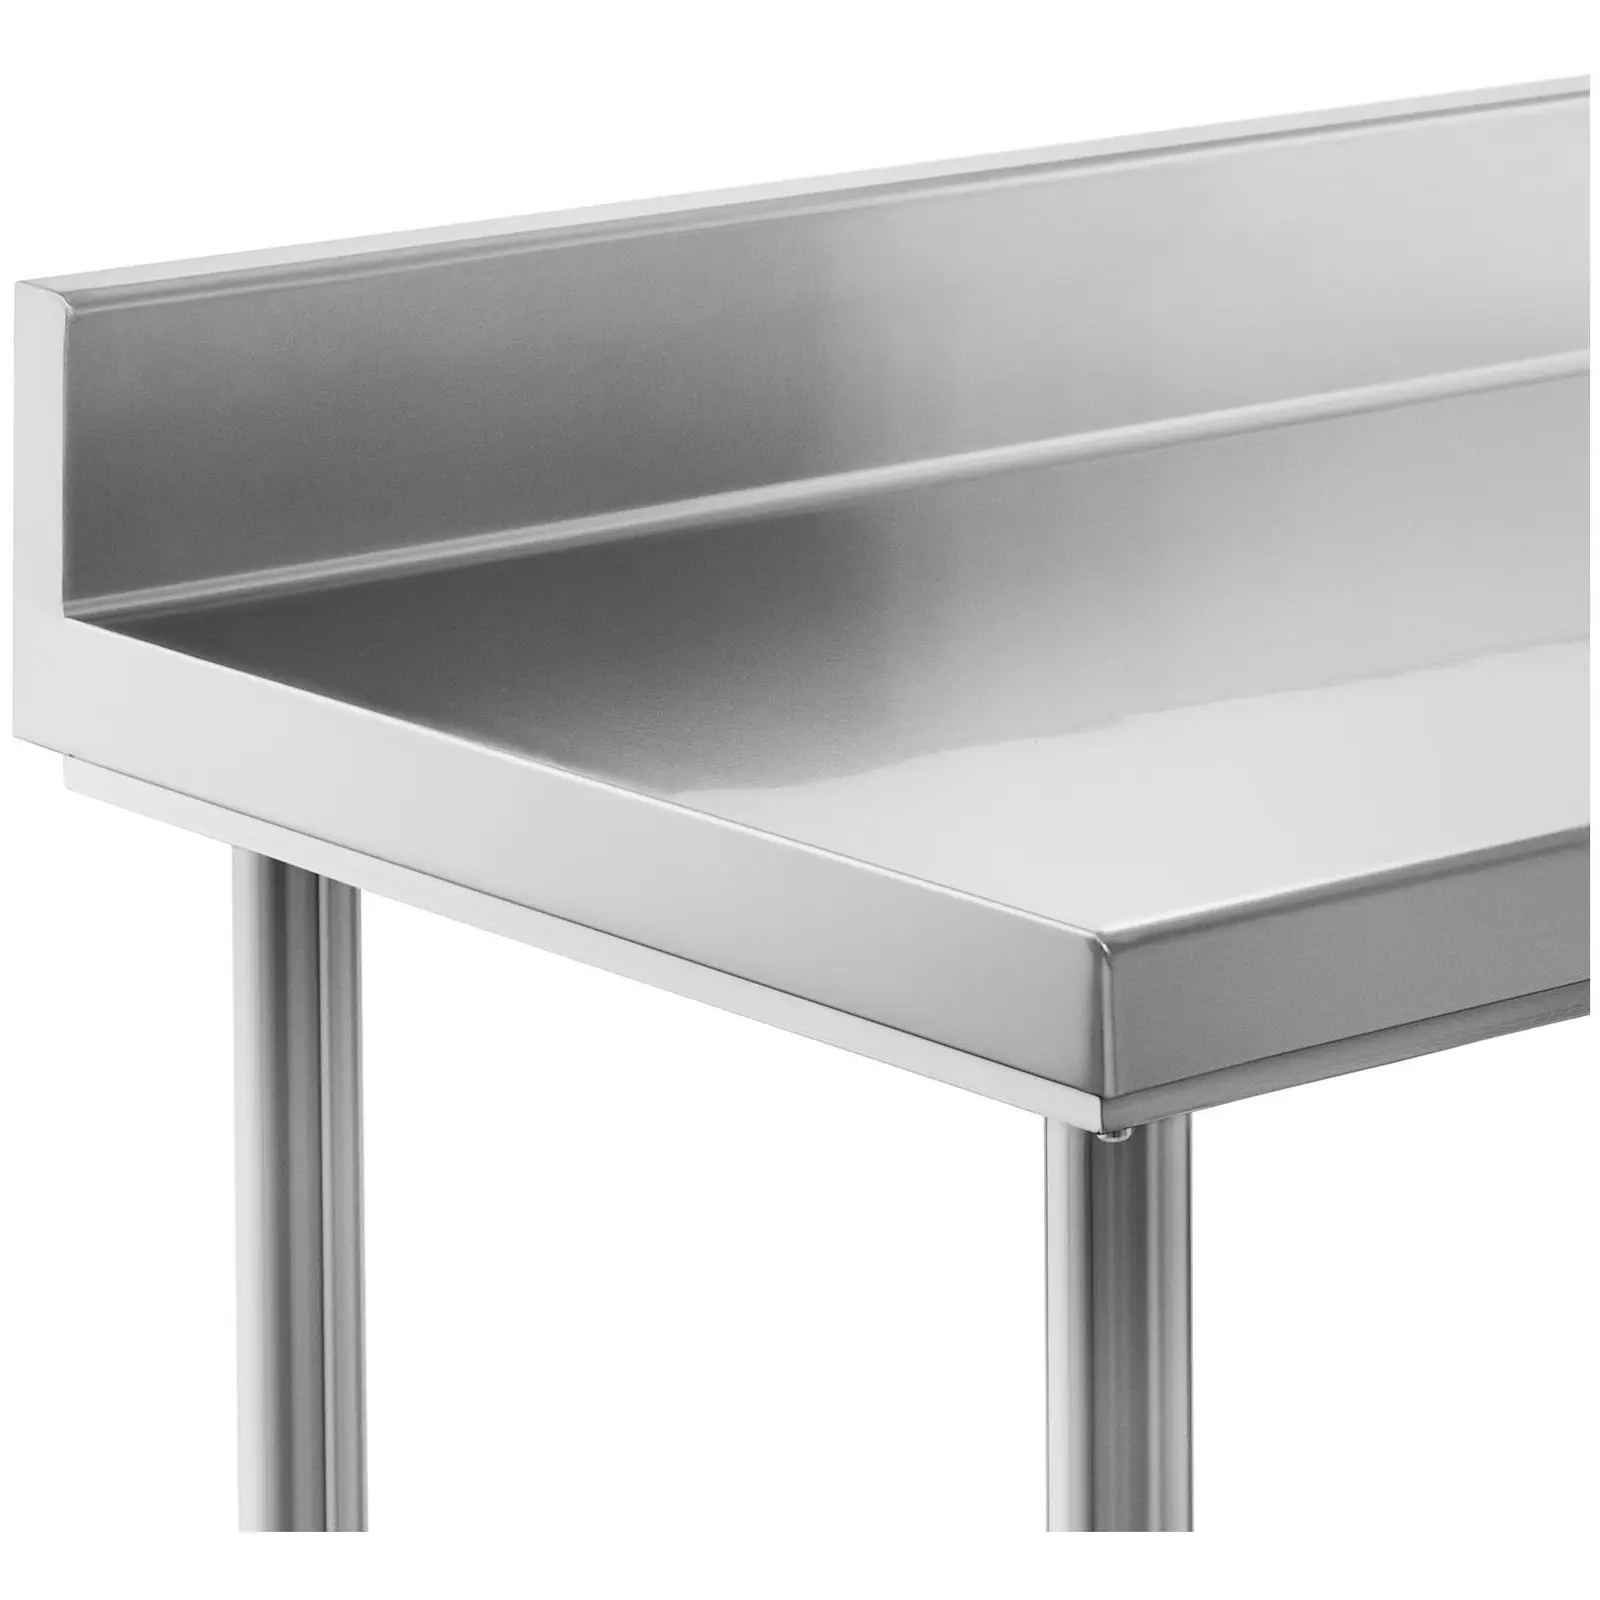 Pracovný stôl z nehrdzavejúcej ocele - 120 x 70 cm - lem - nosnosť 143 kg